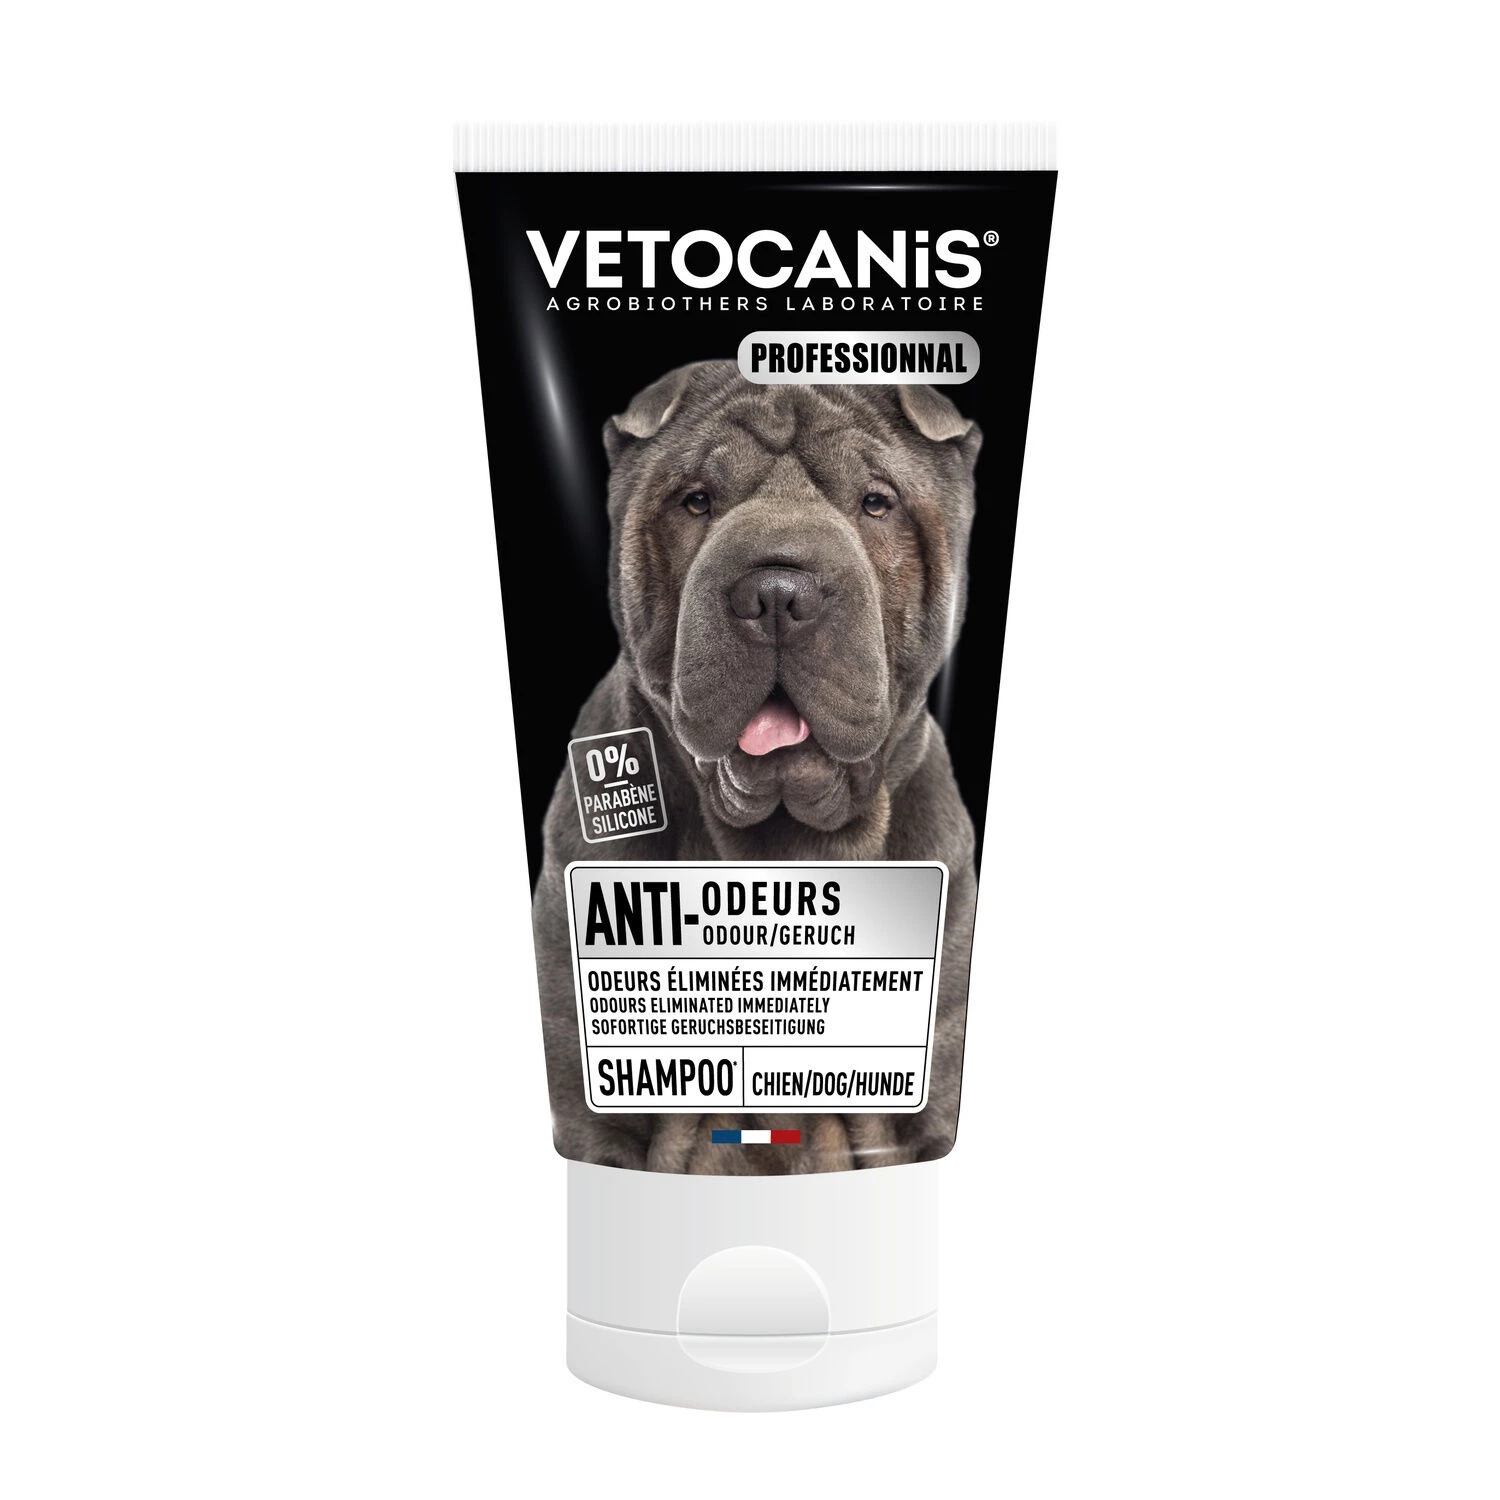 Geruchshemmendes Hundeshampoo, 300 ml - Vetocanis